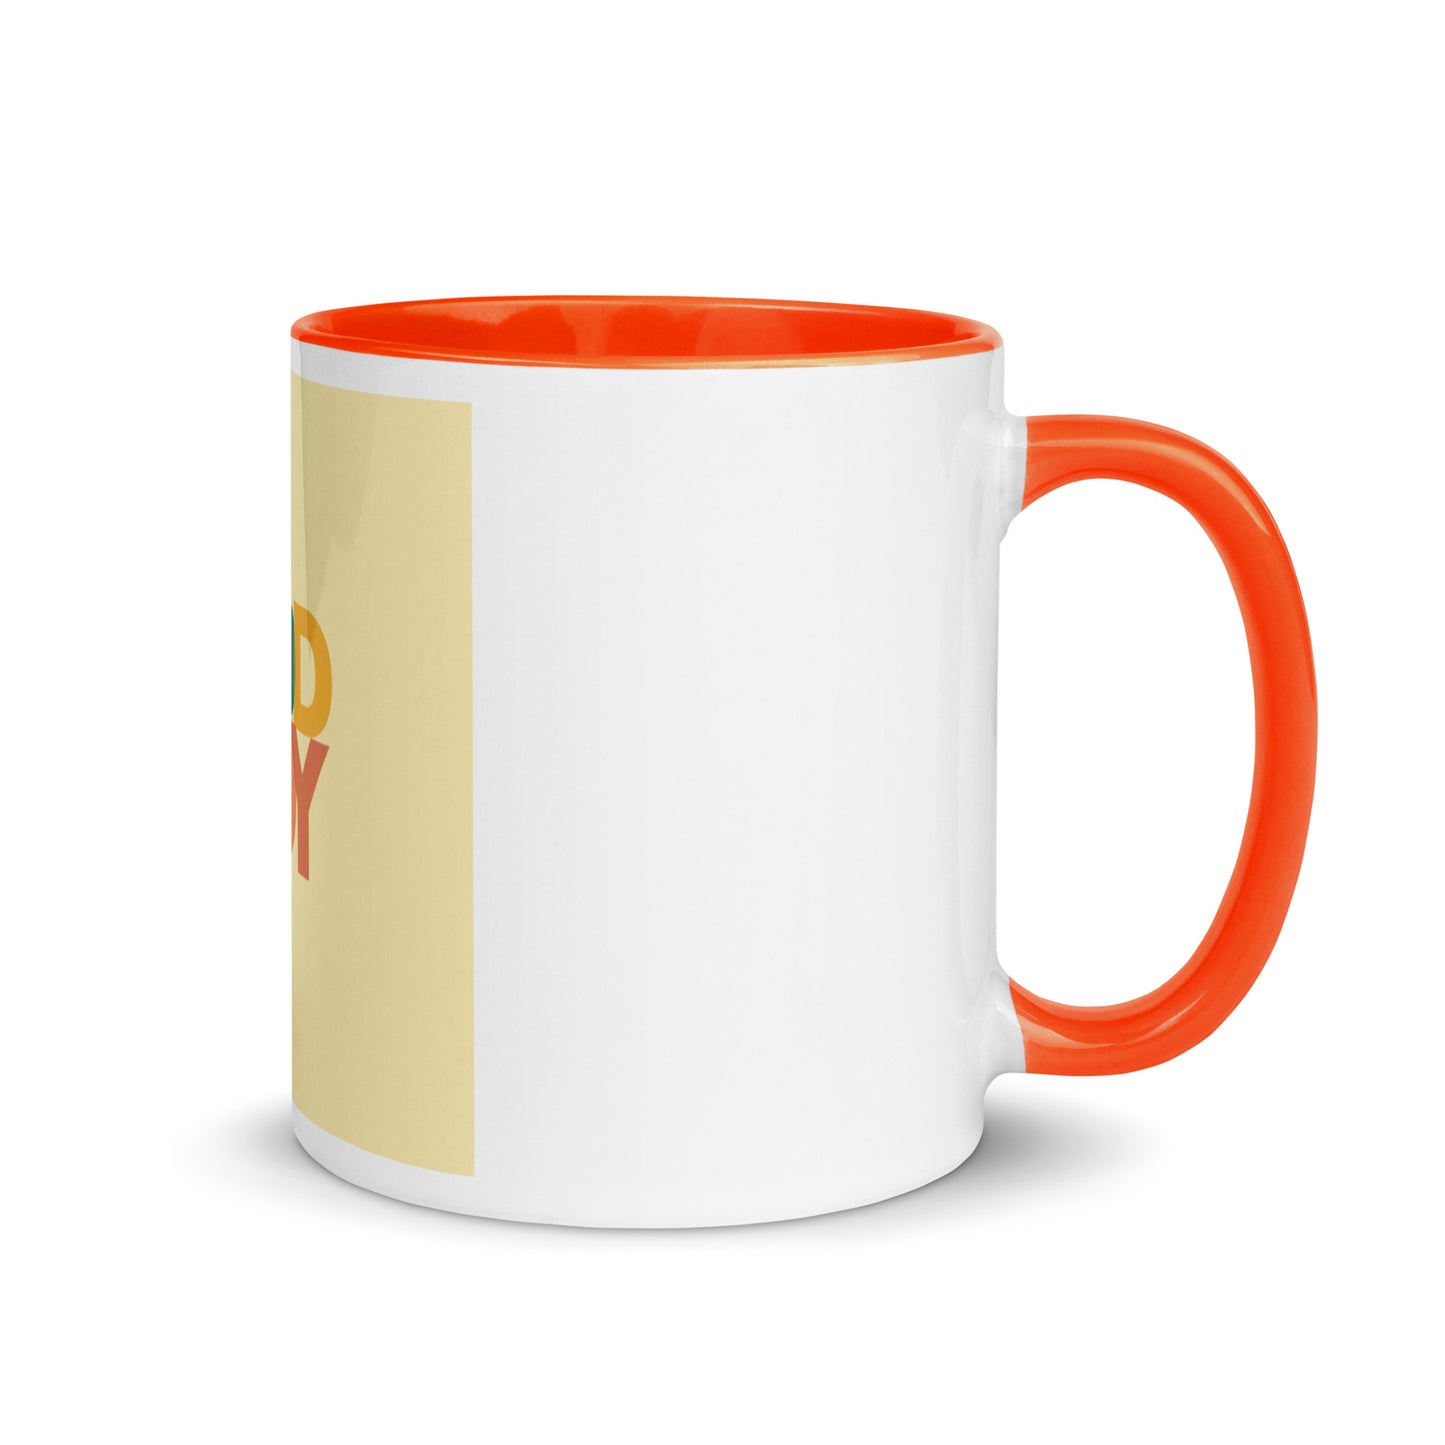 addJOY mug with Color Inside